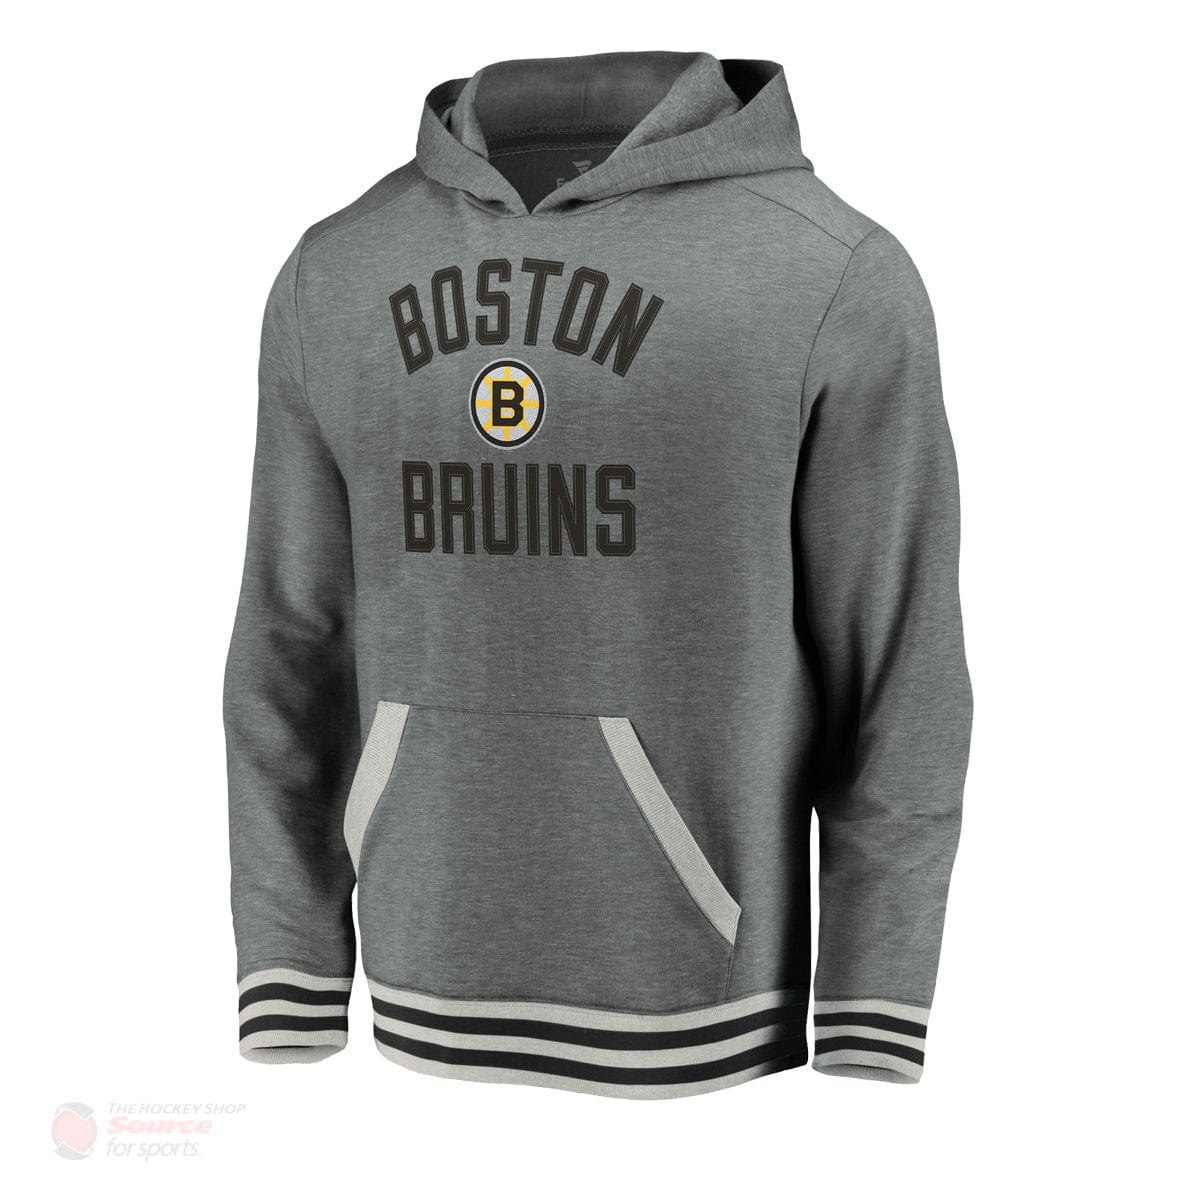 Boston Bruins Fanatics Upperclassmen Vintage Pullover Mens Hoody